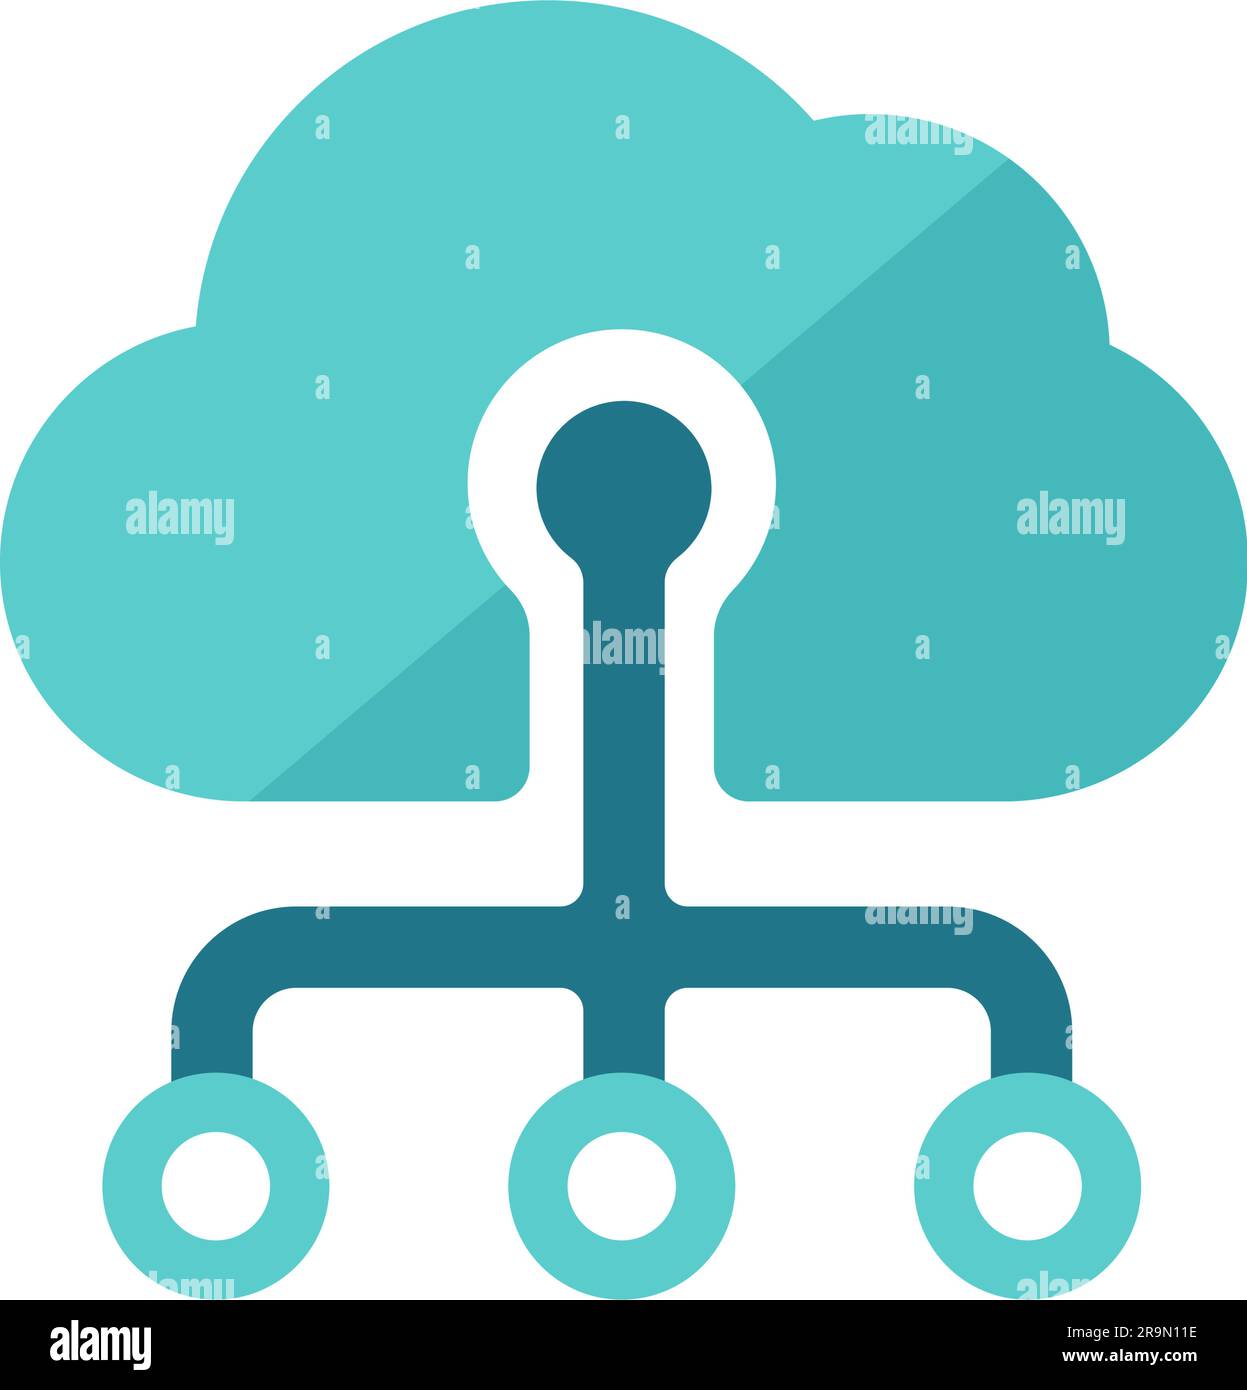 Abbildung des Cloud-Computing-Vektorsymbols Stock Vektor